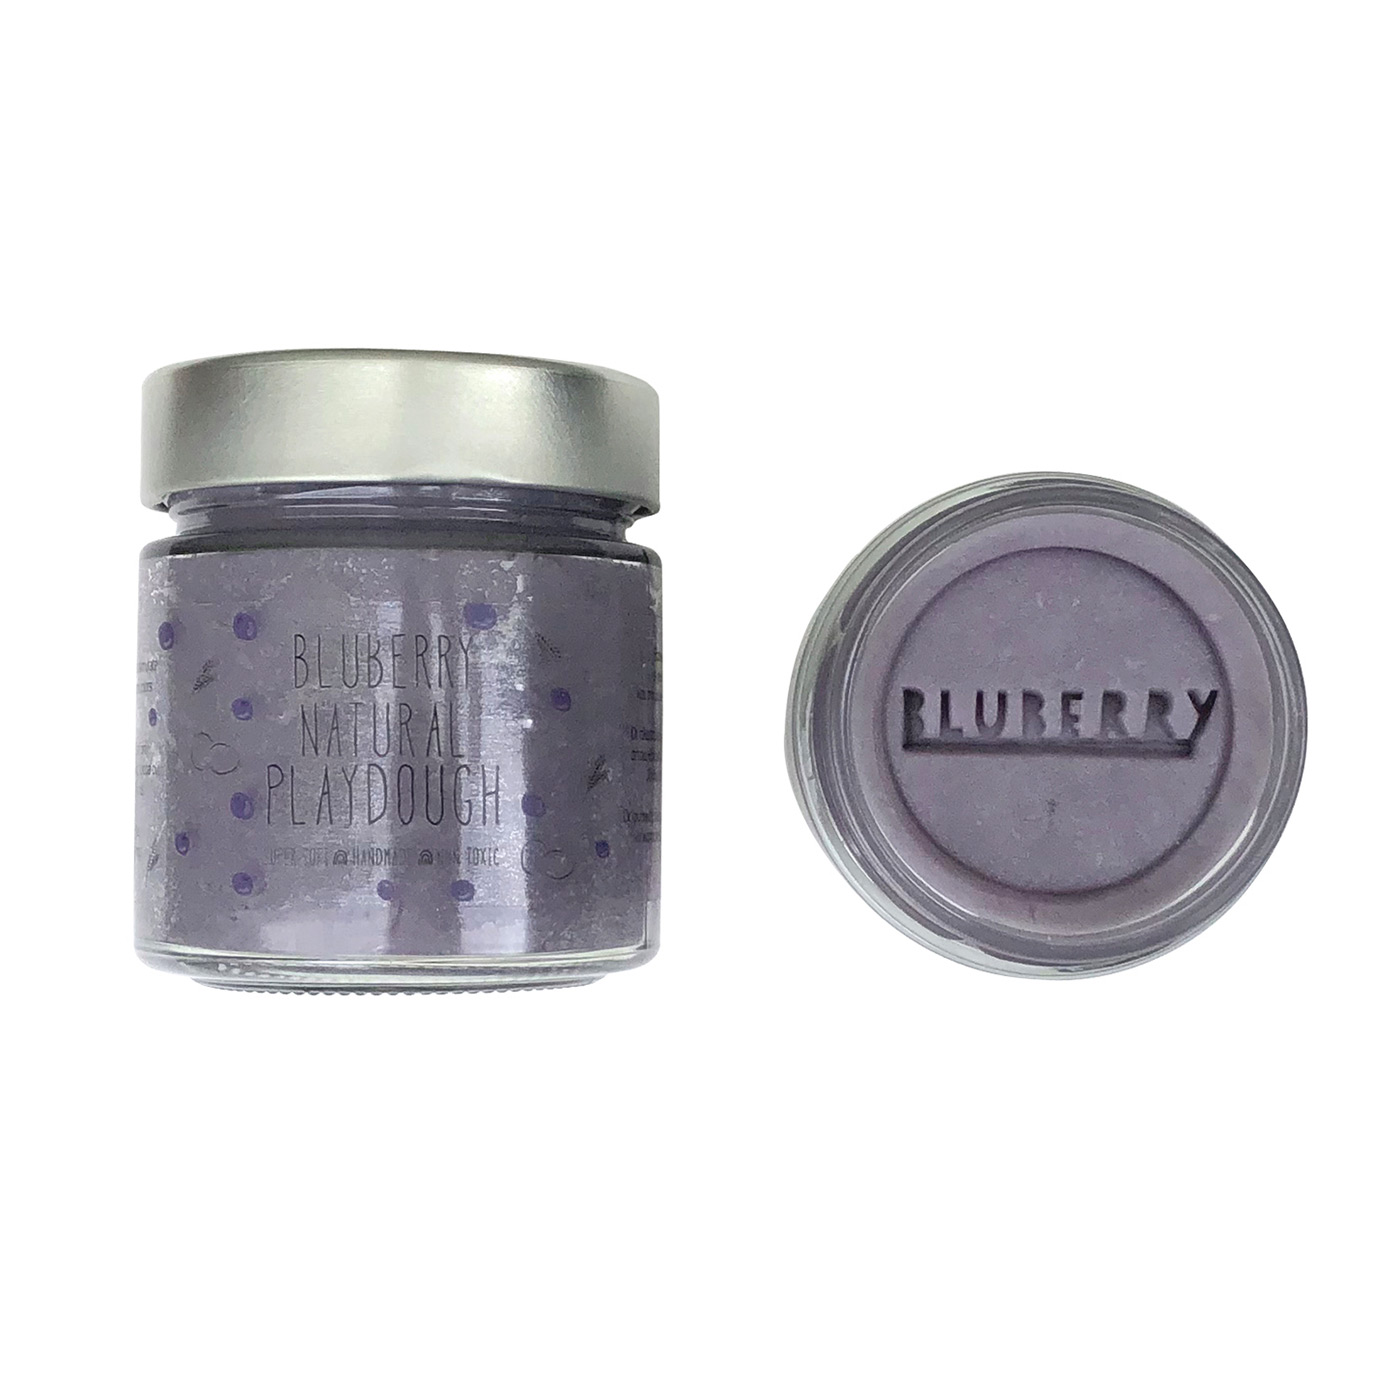 Πλαστελίνη Bluberry Natural Playdough®️ Lavender 300g